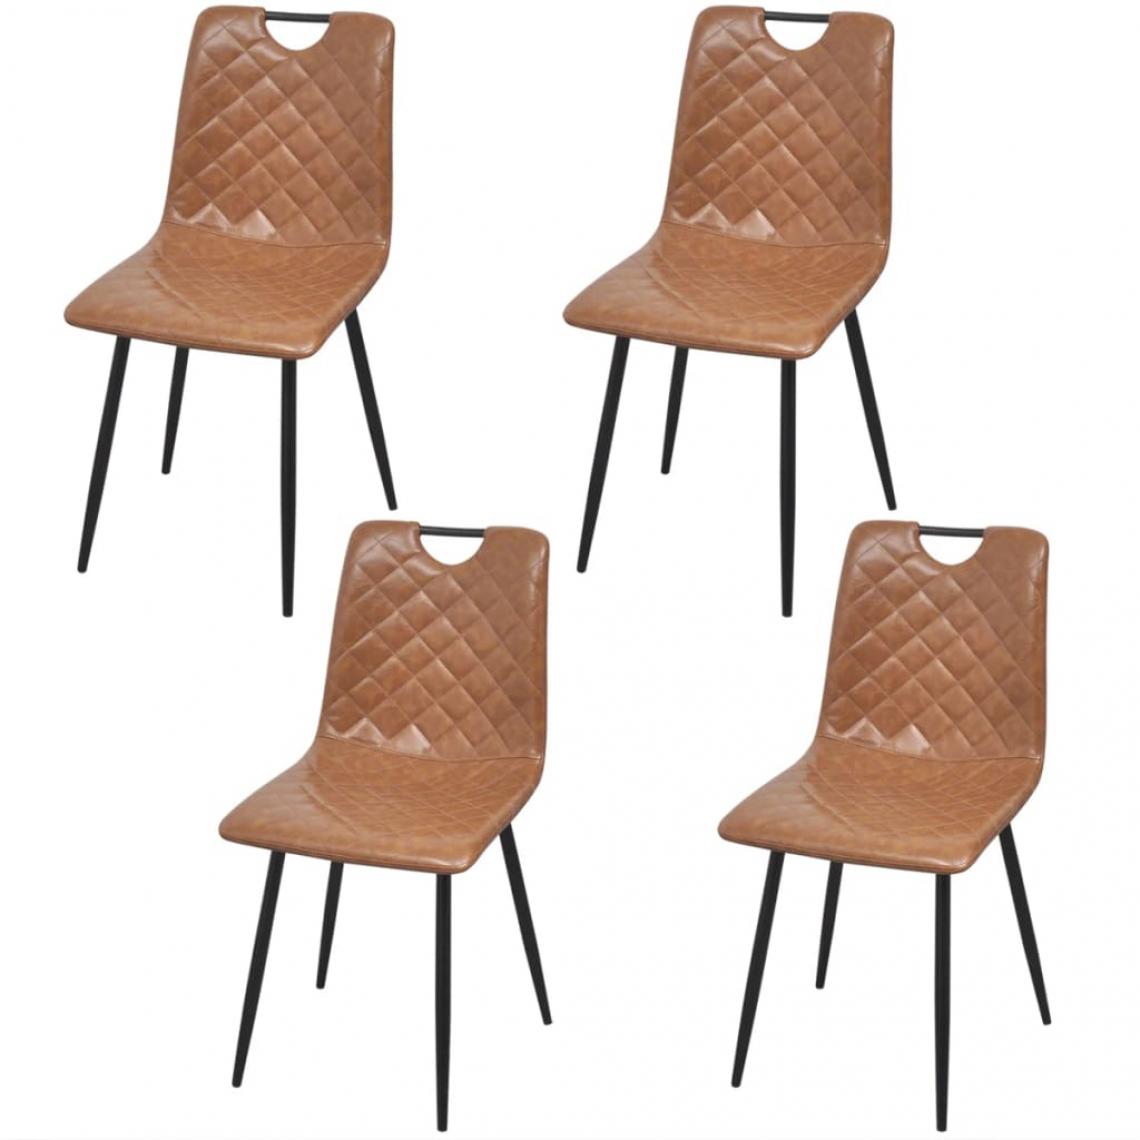 Decoshop26 - Lot de 4 chaises de salle à manger cuisine style rétro en similicuir marron clair structure en acier CDS021675 - Chaises